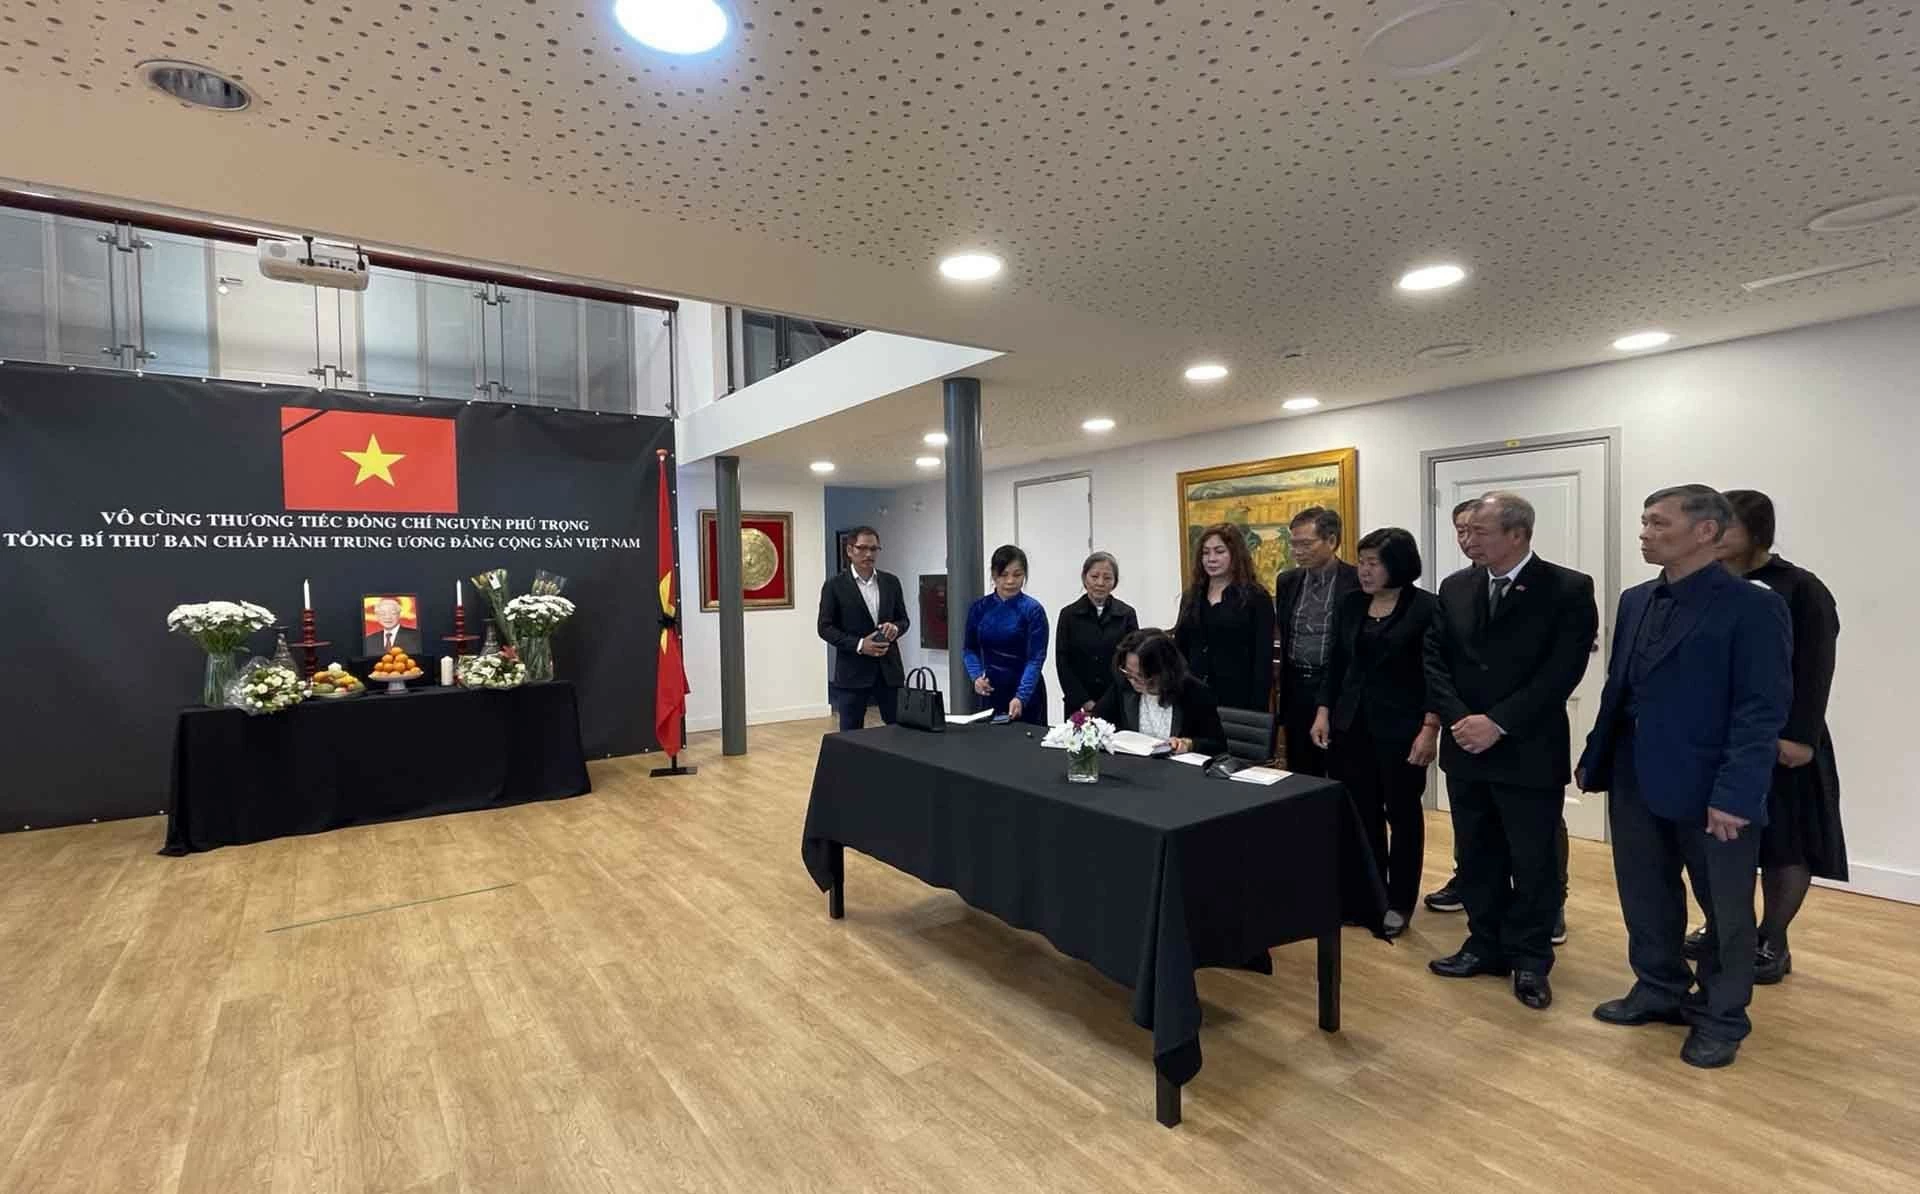 Đại sứ quán Việt Nam tại Hà Lan mở sổ tang và tổ chức lễ viếng Tổng Bí thư Nguyễn Phú Trọng